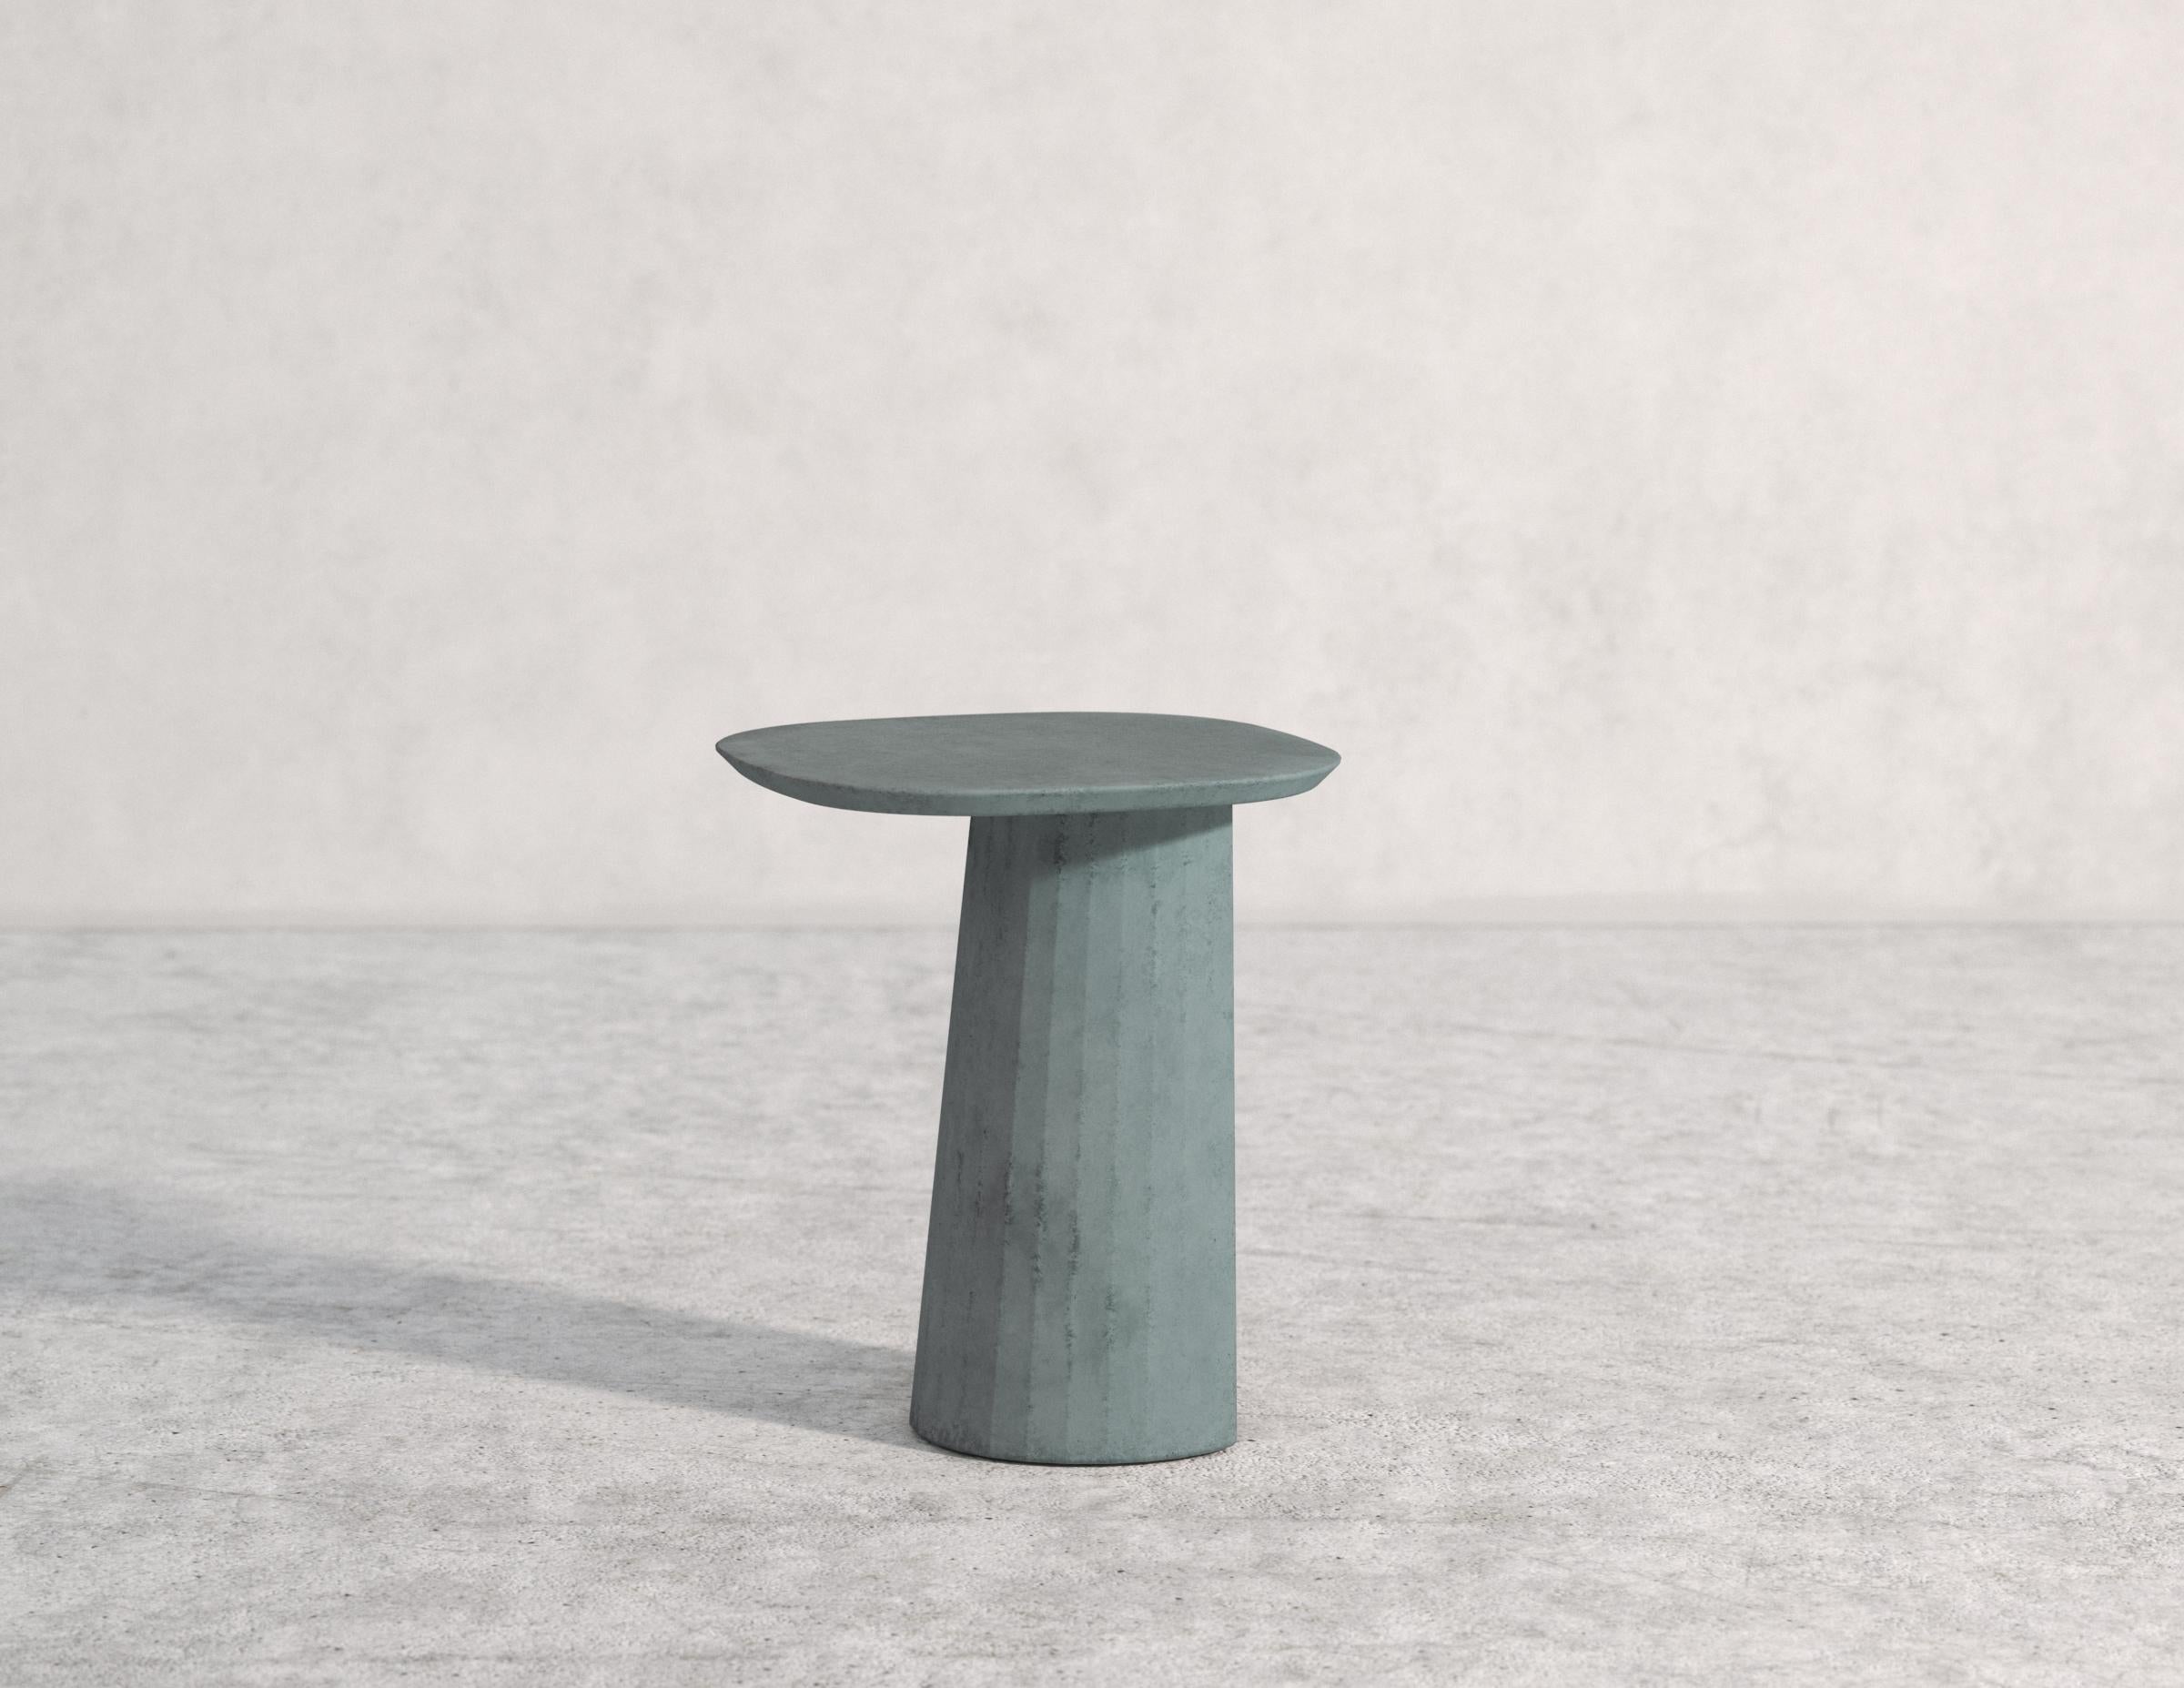 Molded Fusto Domestic Concrete Landscape Fusto Coffee Table Mod. II